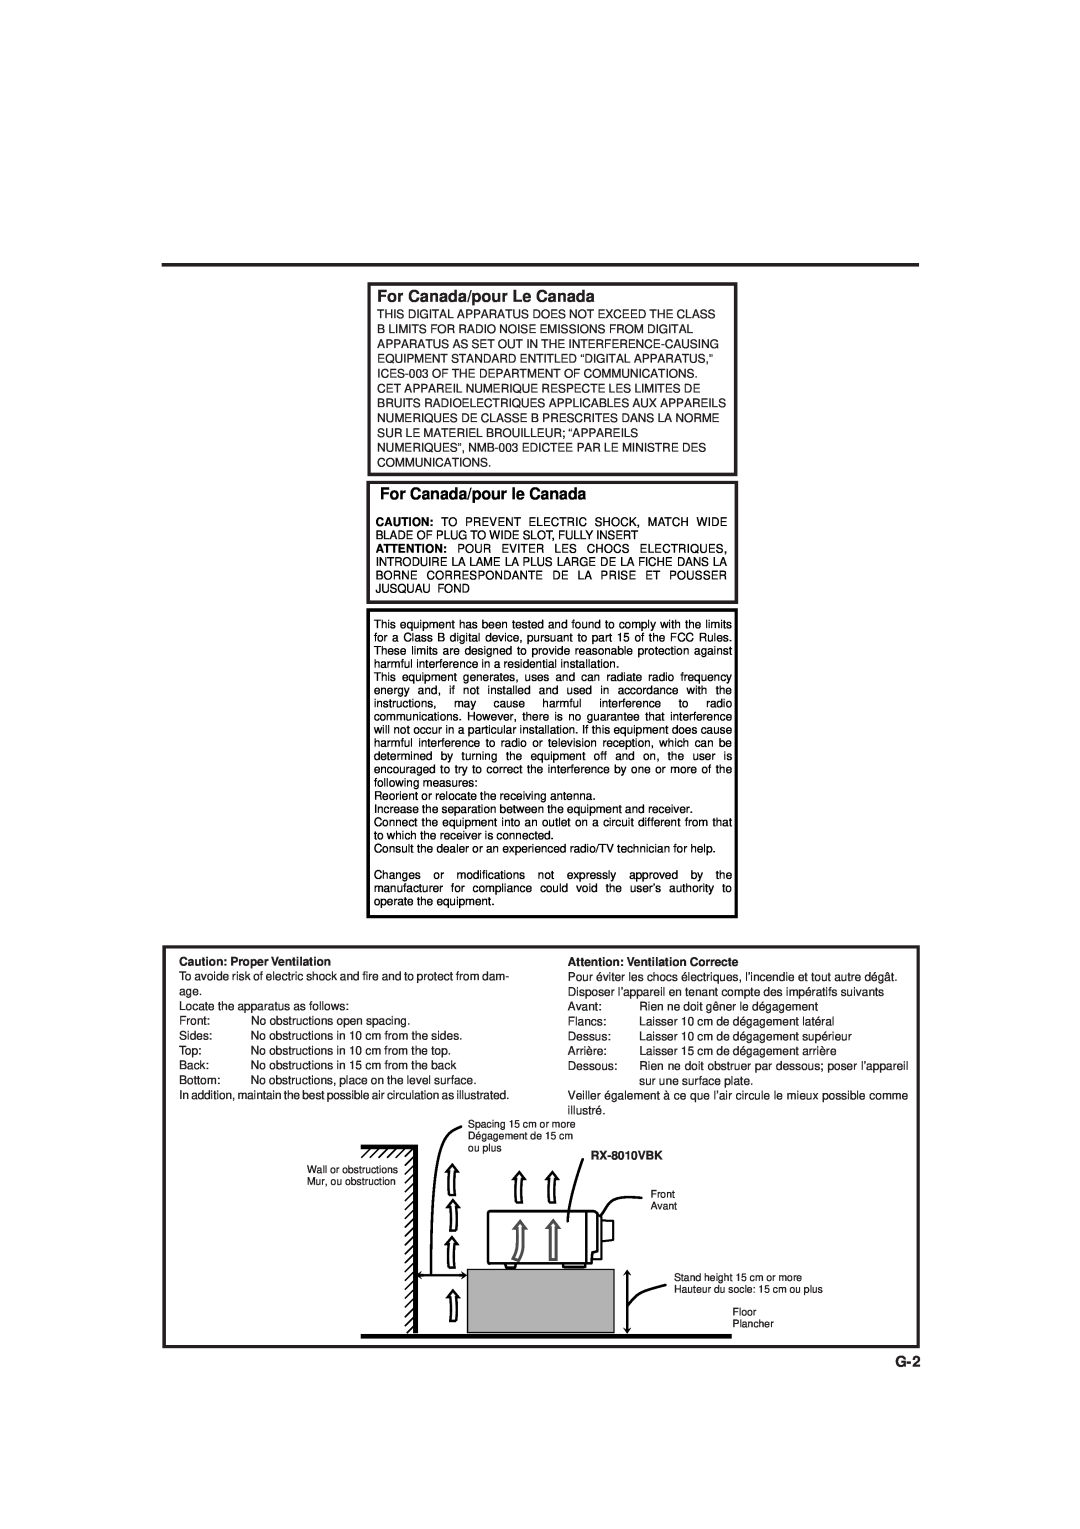 JVC rx-8010vbk manual For Canada/pour Le Canada, For Canada/pour le Canada, Caution Proper Ventilation, RX-8010VBK 